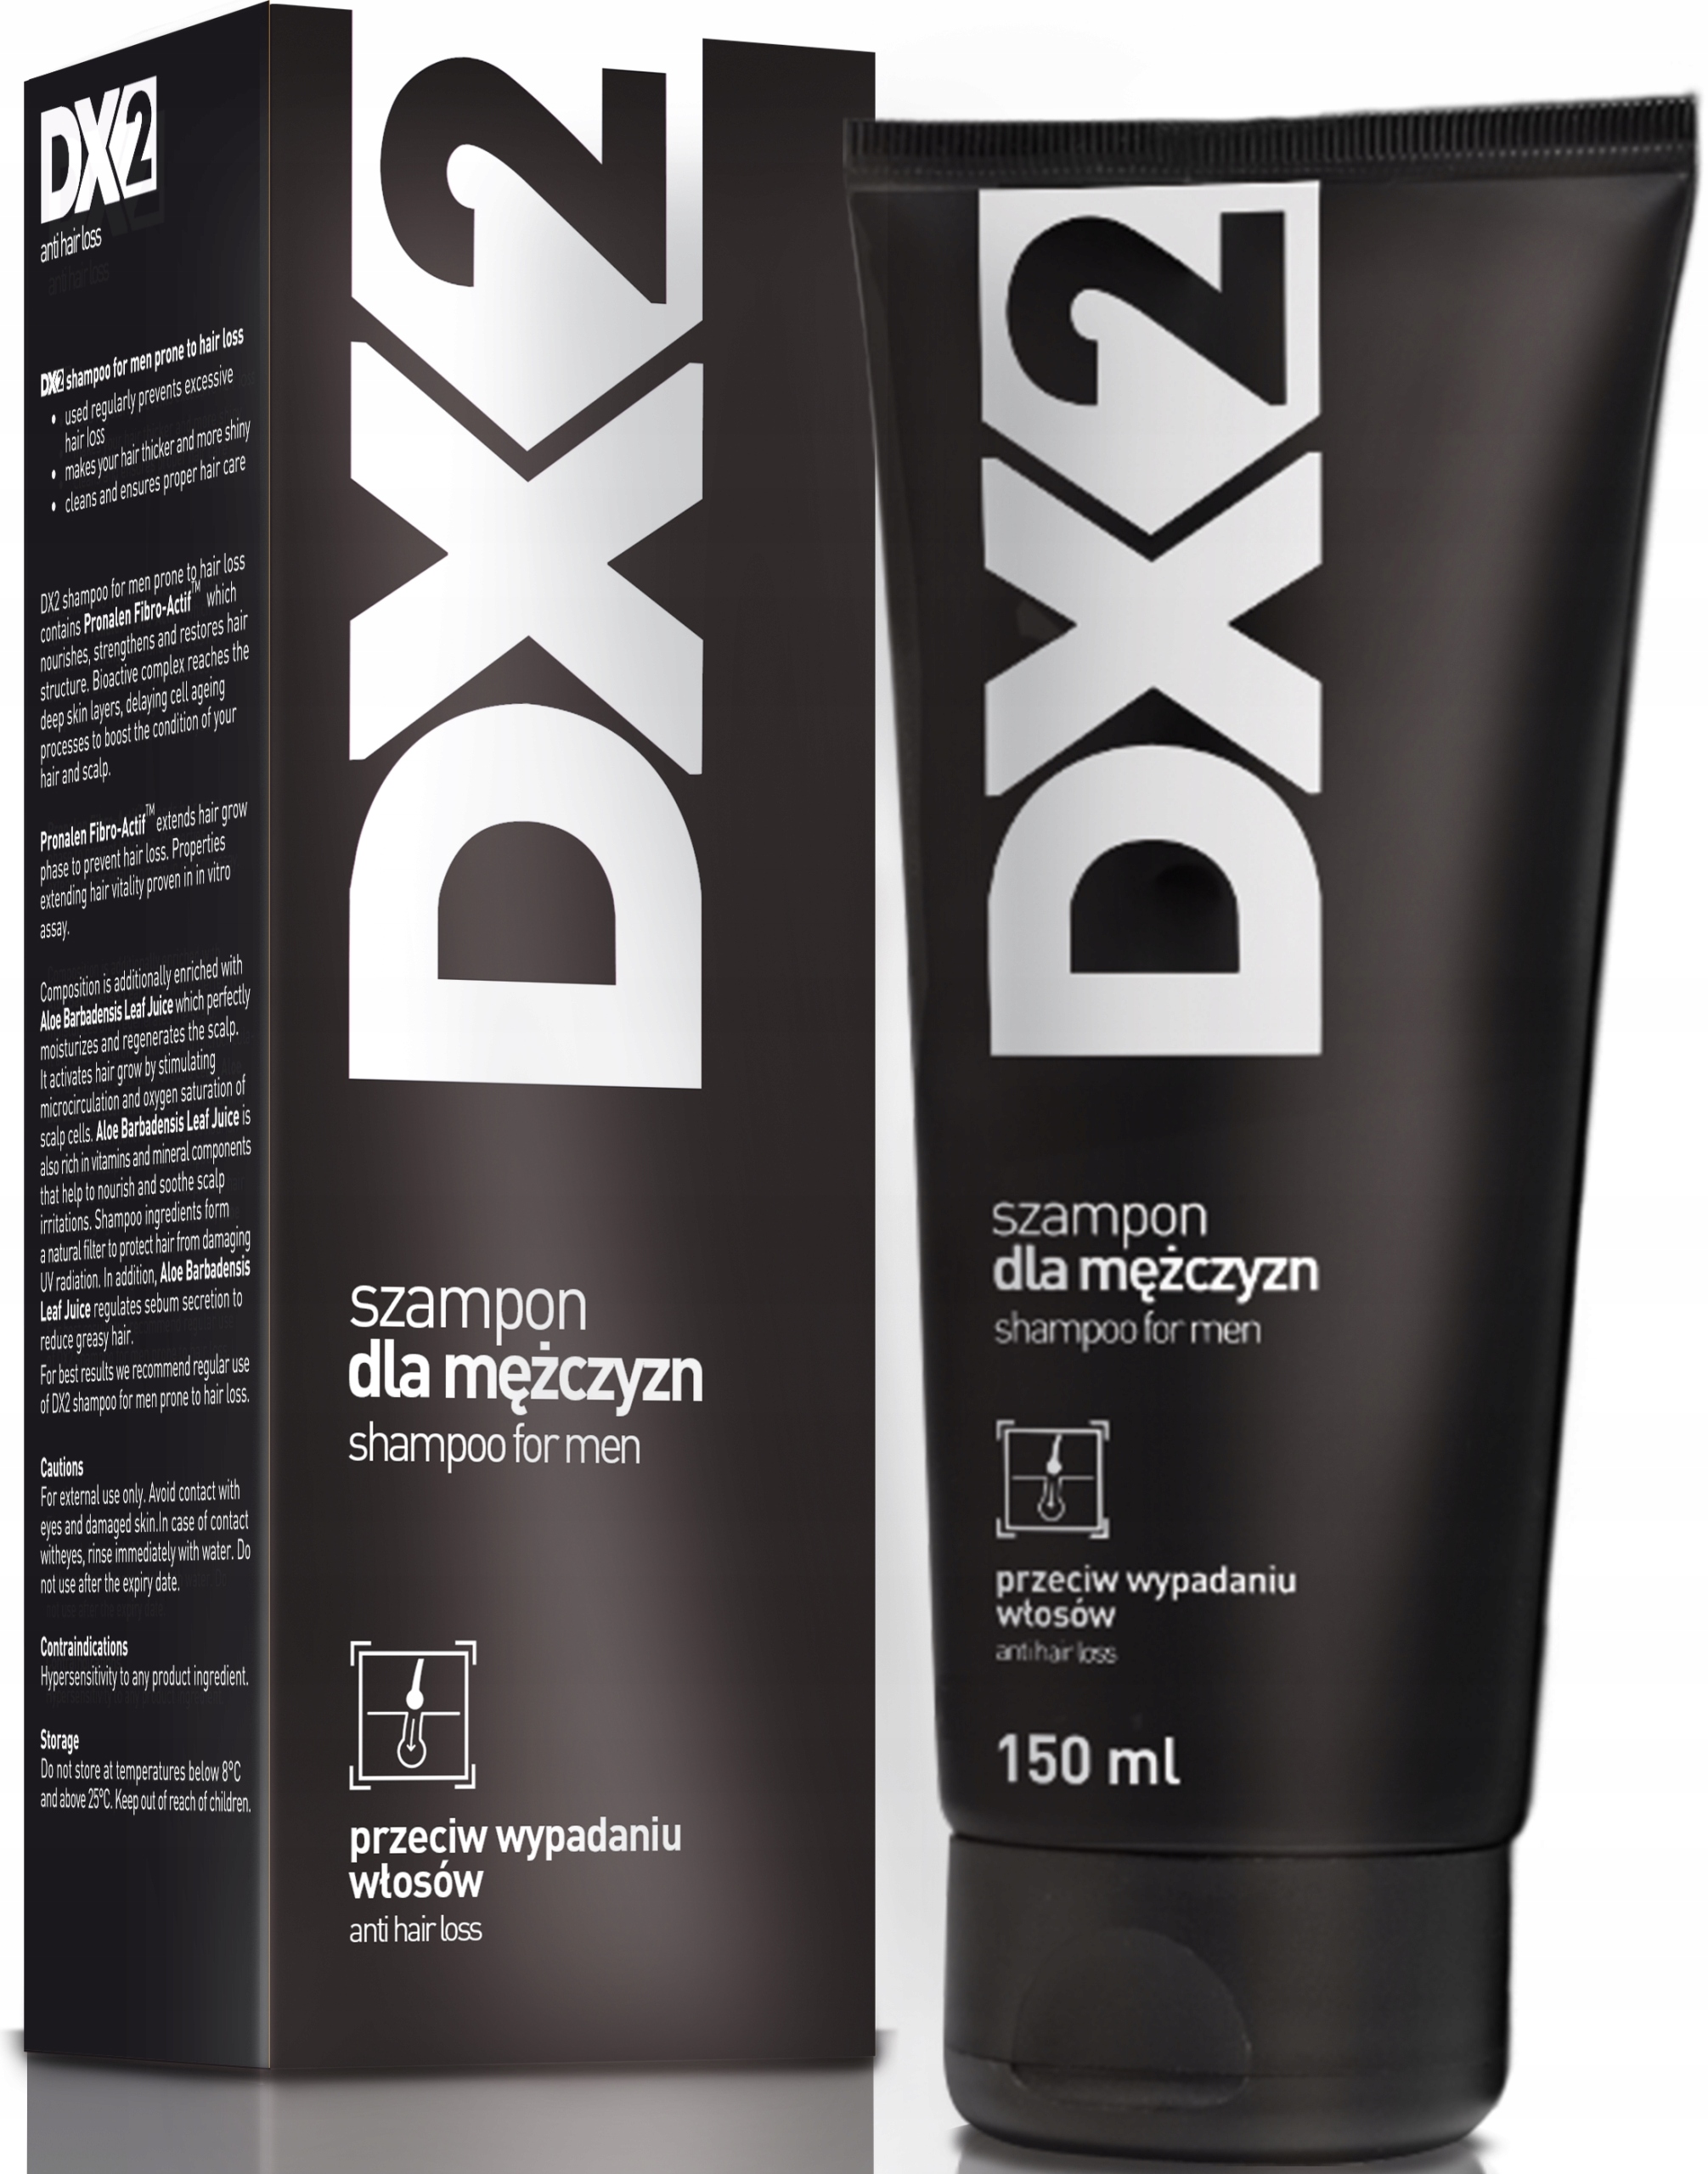 szampon dx2 przewic wypadaniu